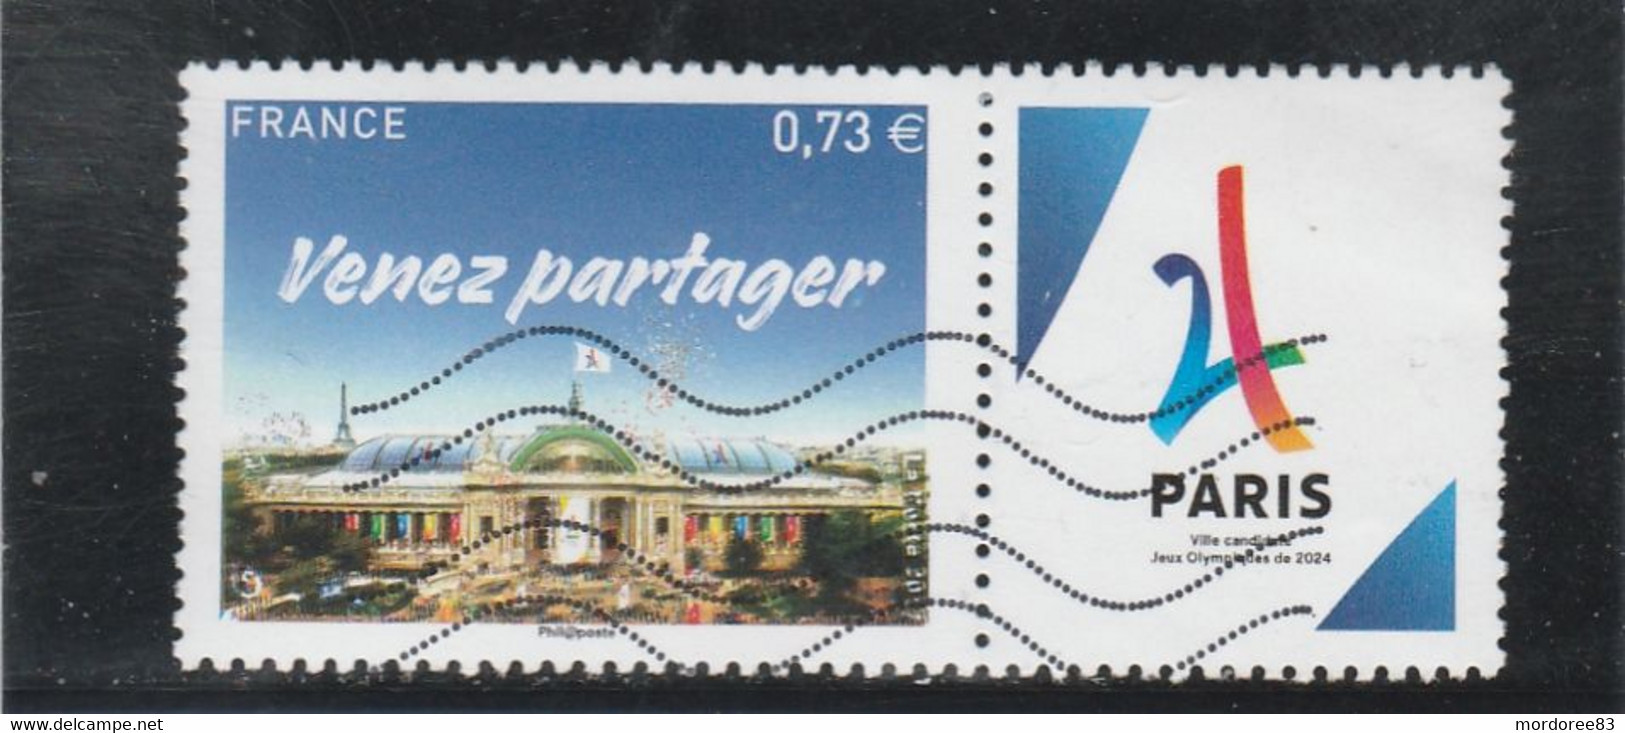 FRANCE 2017 PARIS GRAND PALAIS VENEZ PARTAGER OBLITERE  YT 5144 - Used Stamps